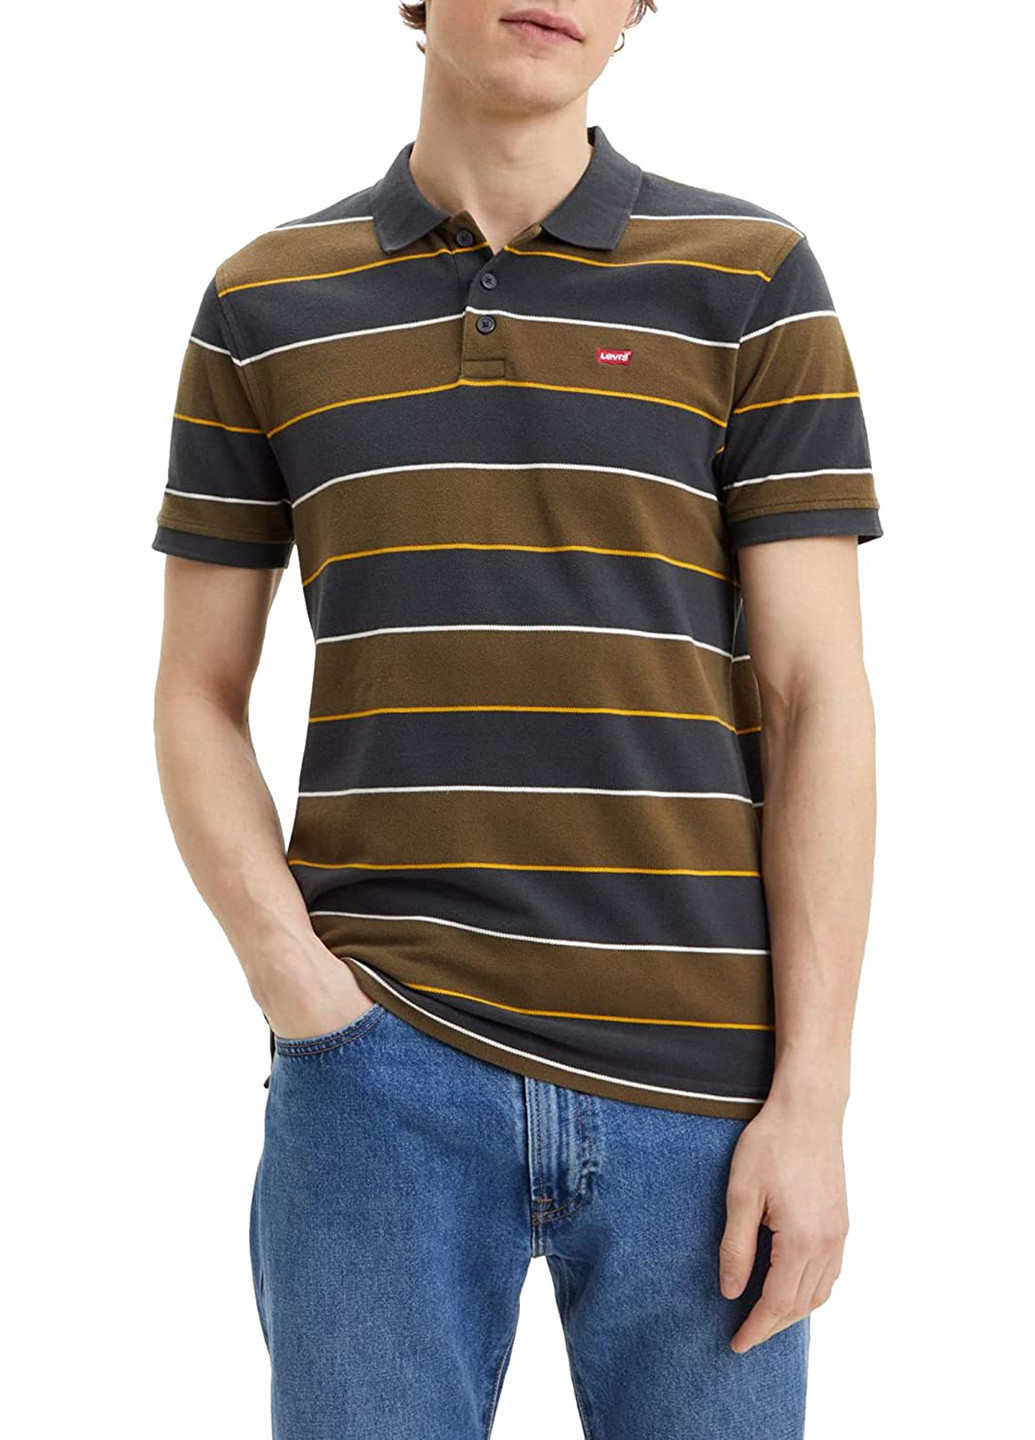 Цветная футболка-поло для мужчин Levi's в полоску